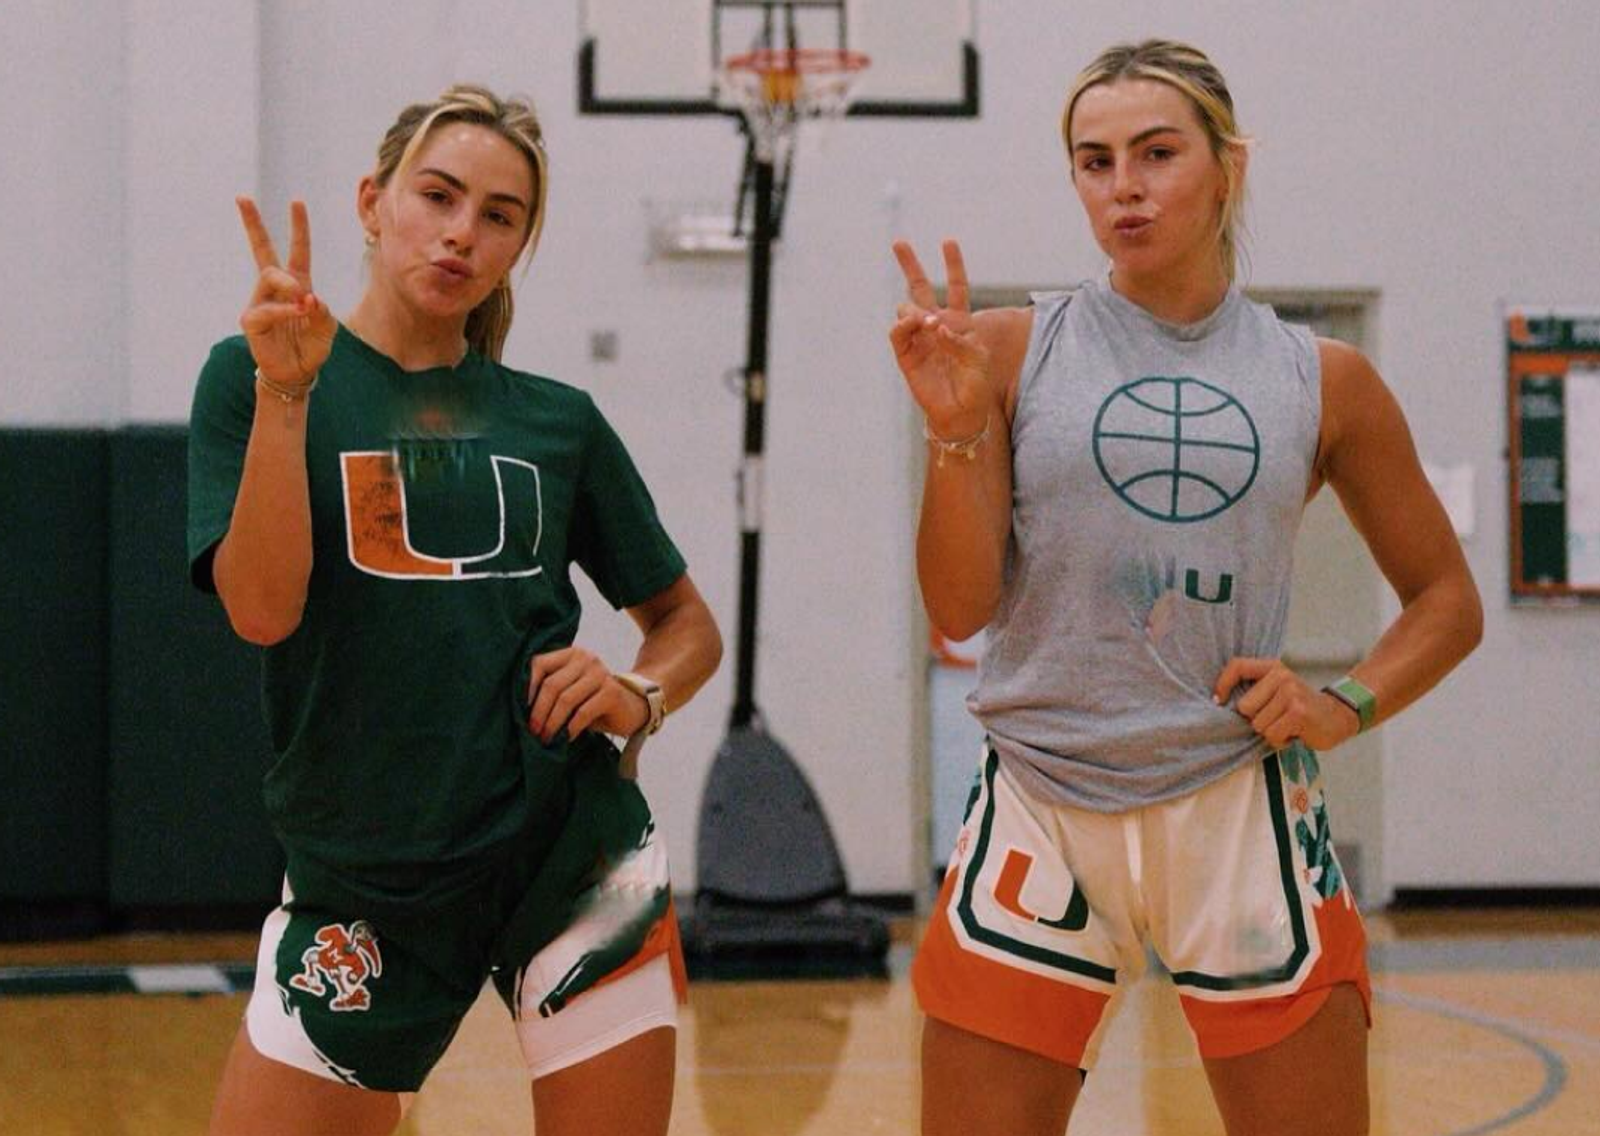 Haley and Hannah Training For Upcoming Season at Miami